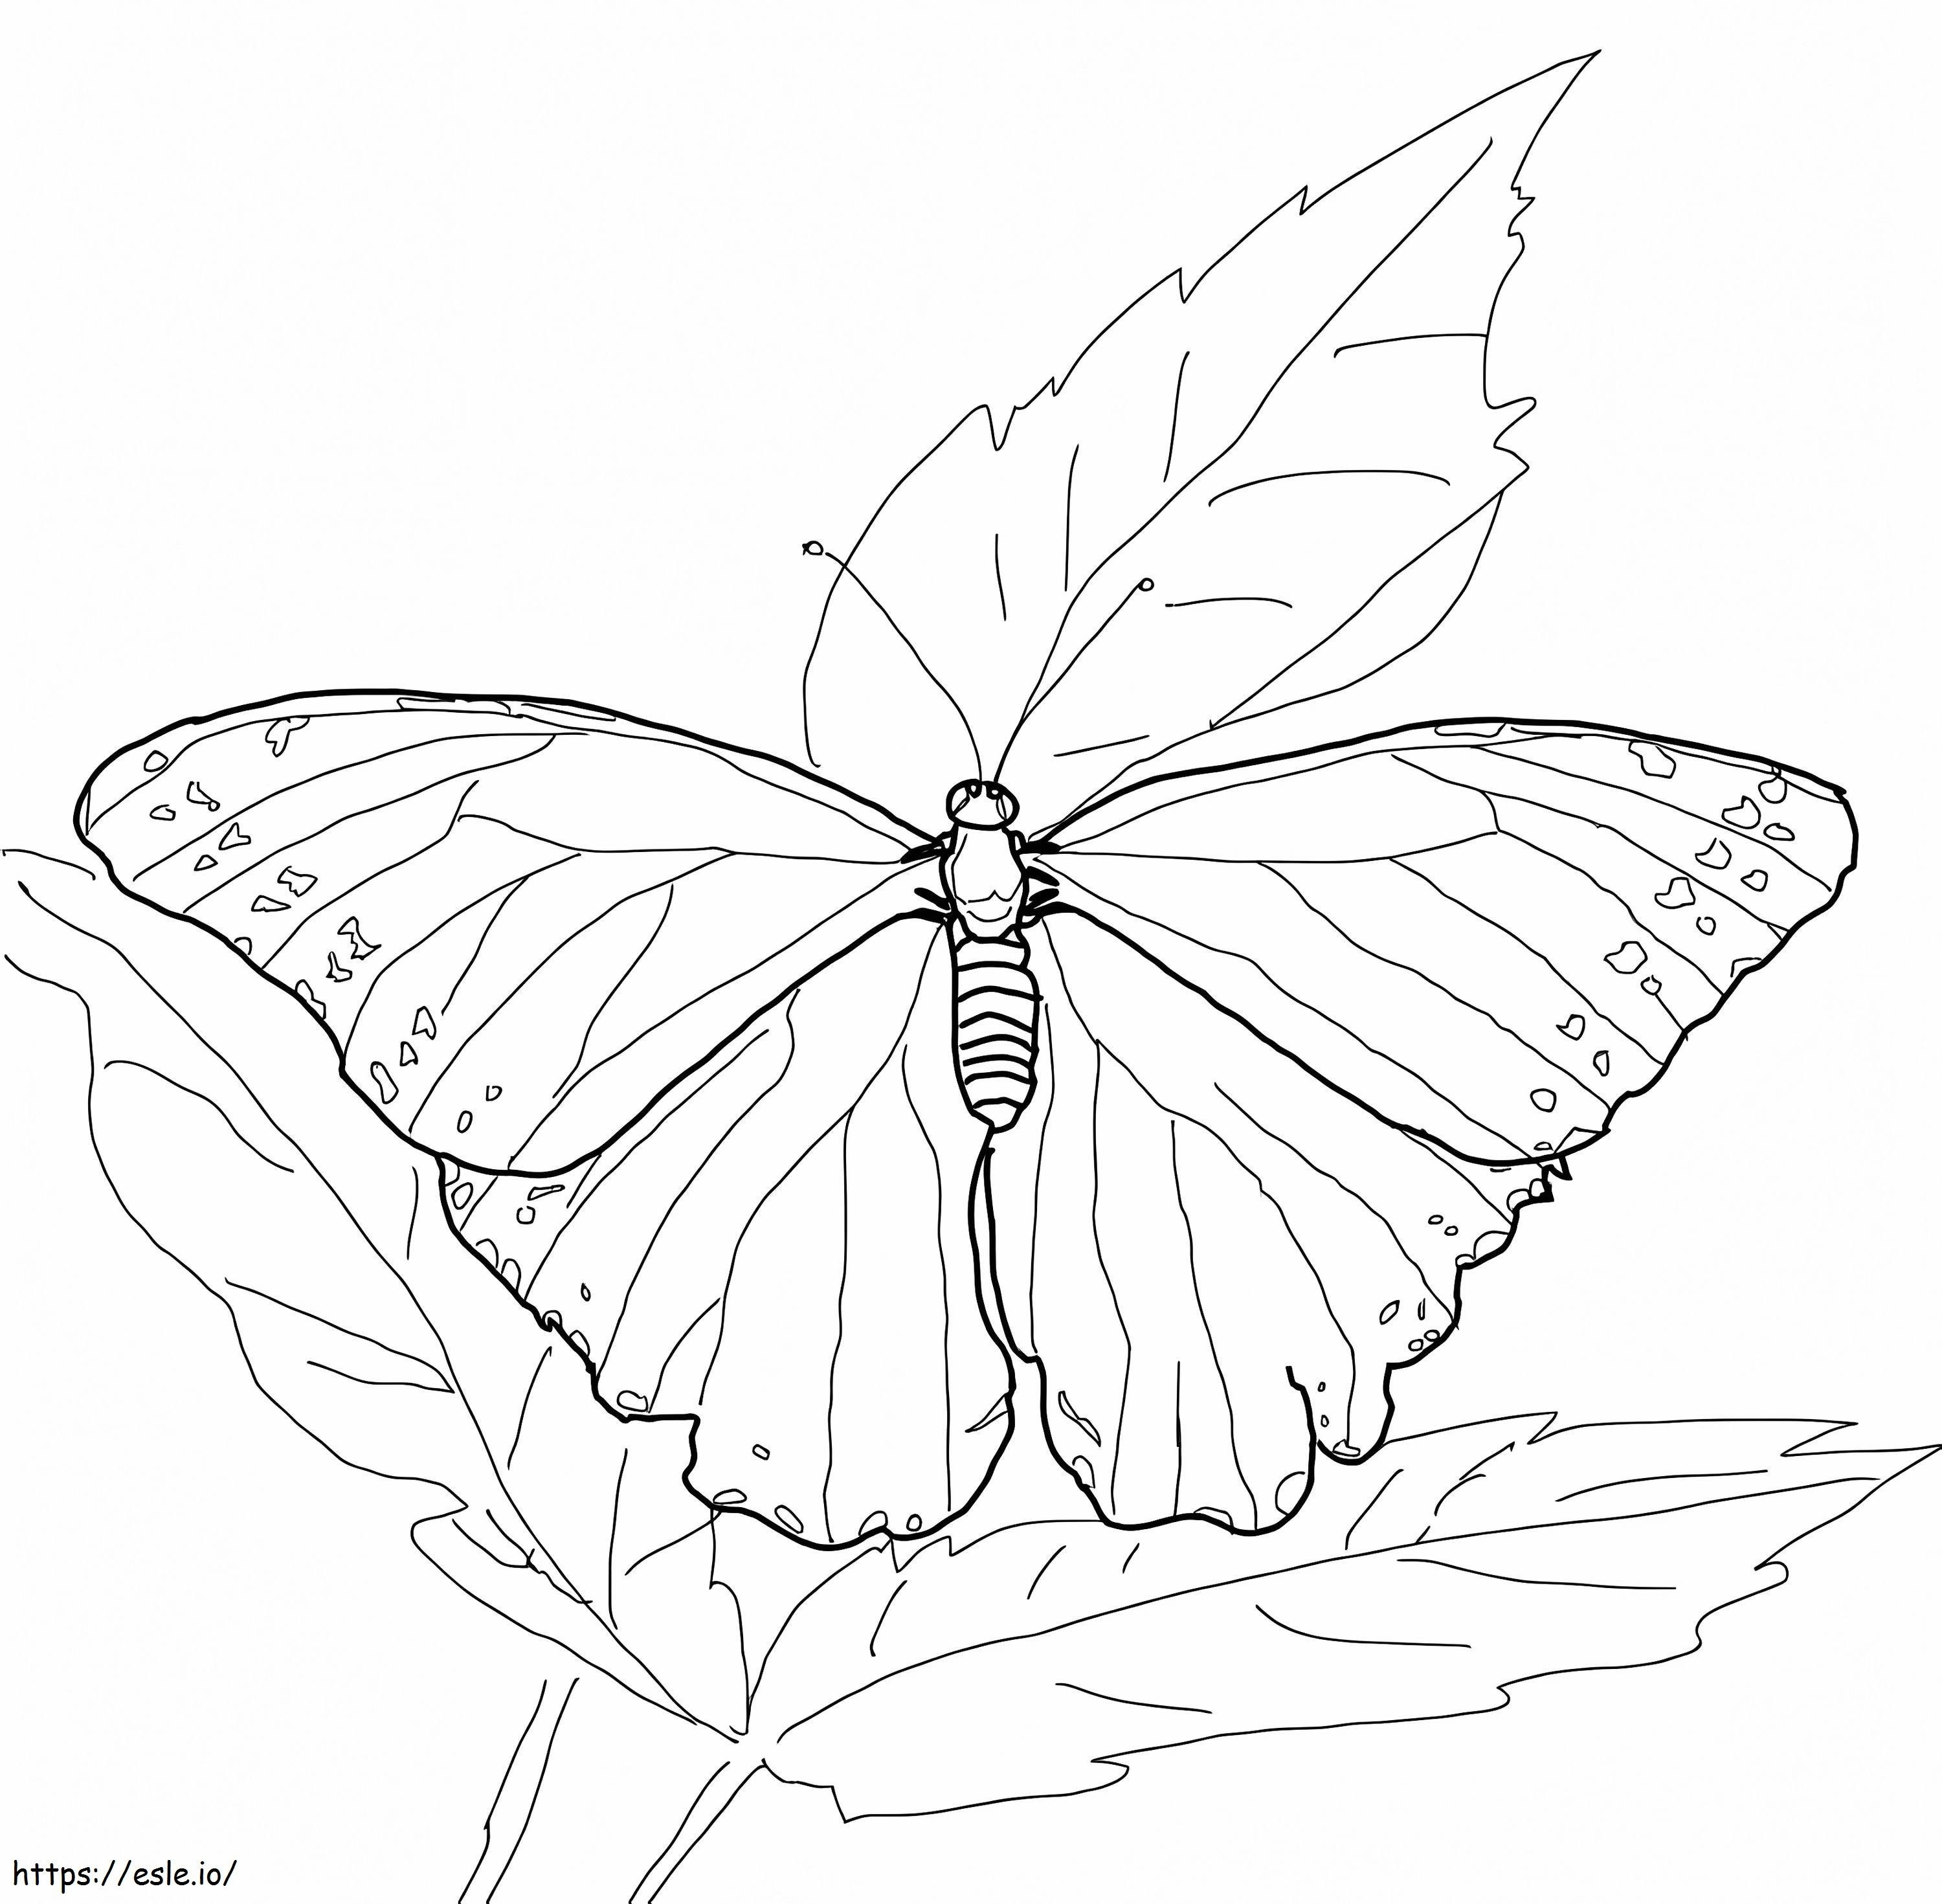 Coloriage Papillon Morpho bleu à imprimer dessin